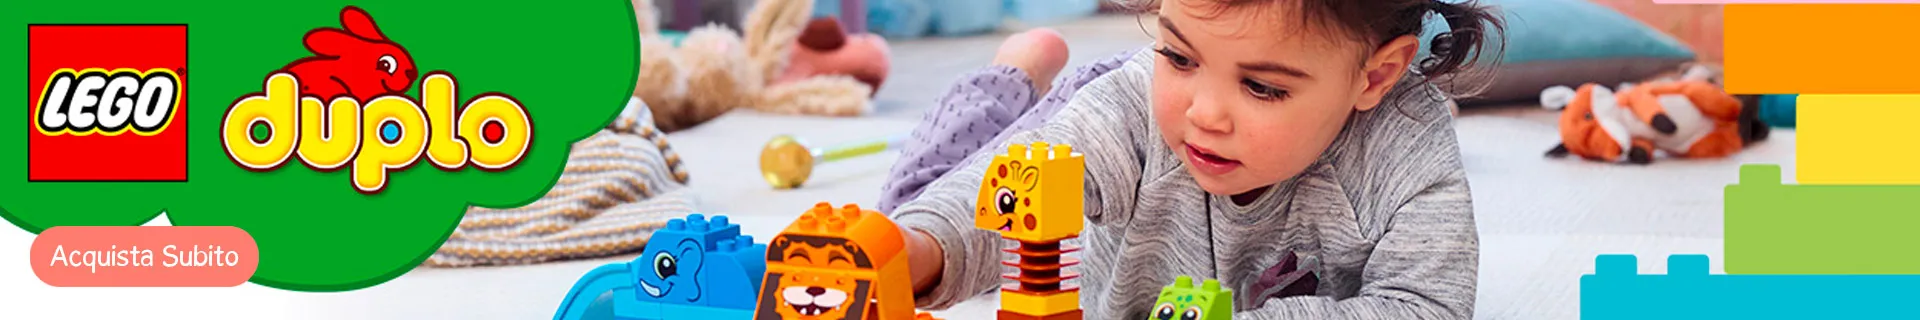 Lego Duplo: Scopri le Migliori Offerte Online | Giodicart